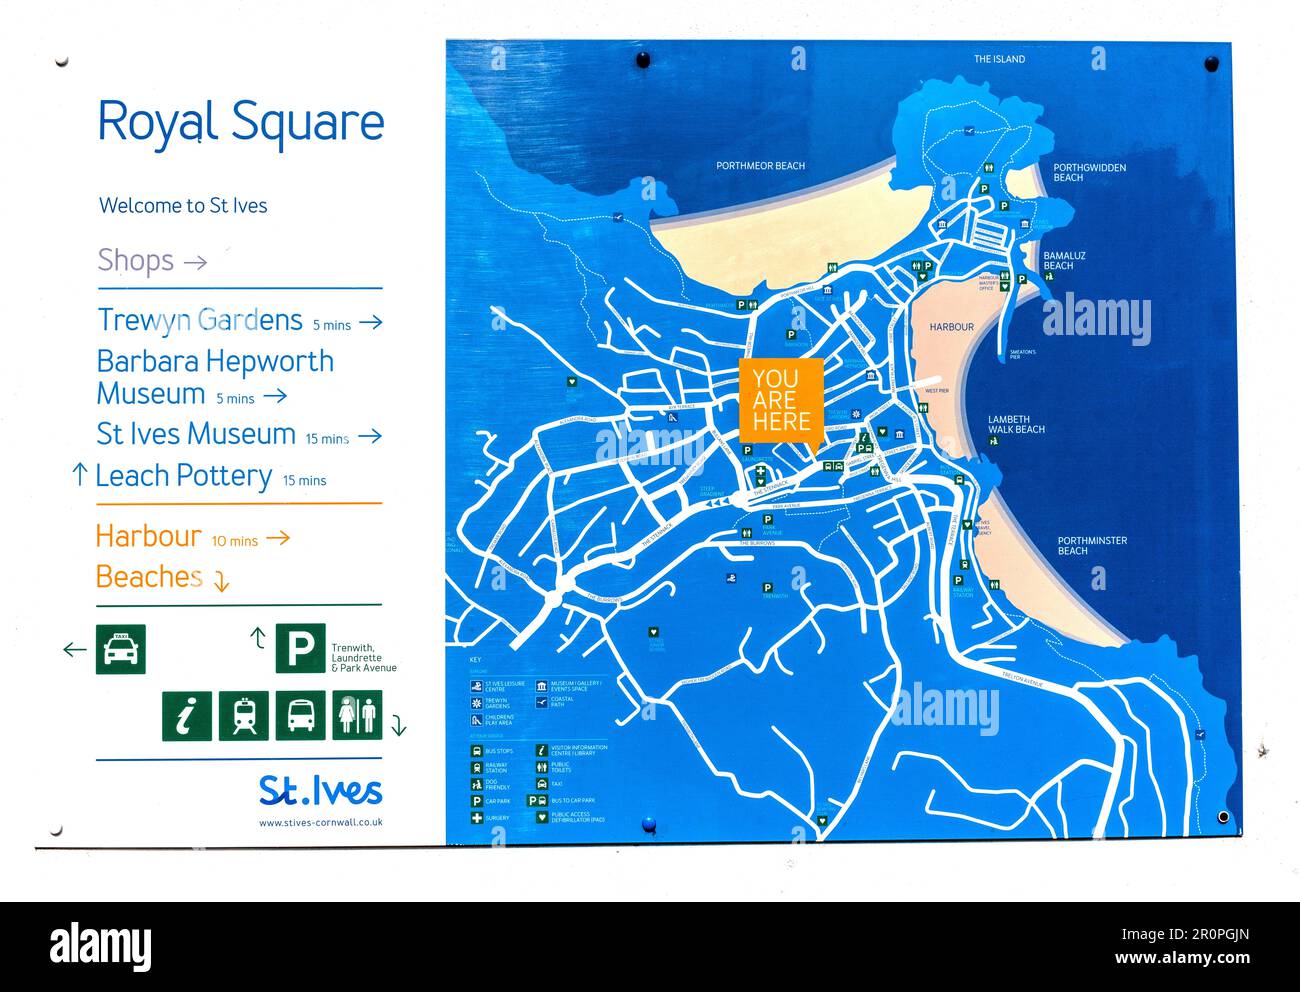 Cartel de información turística / tablero en la Plaza Real, St. Ives, Cornualles, Inglaterra, Reino Unido Foto de stock